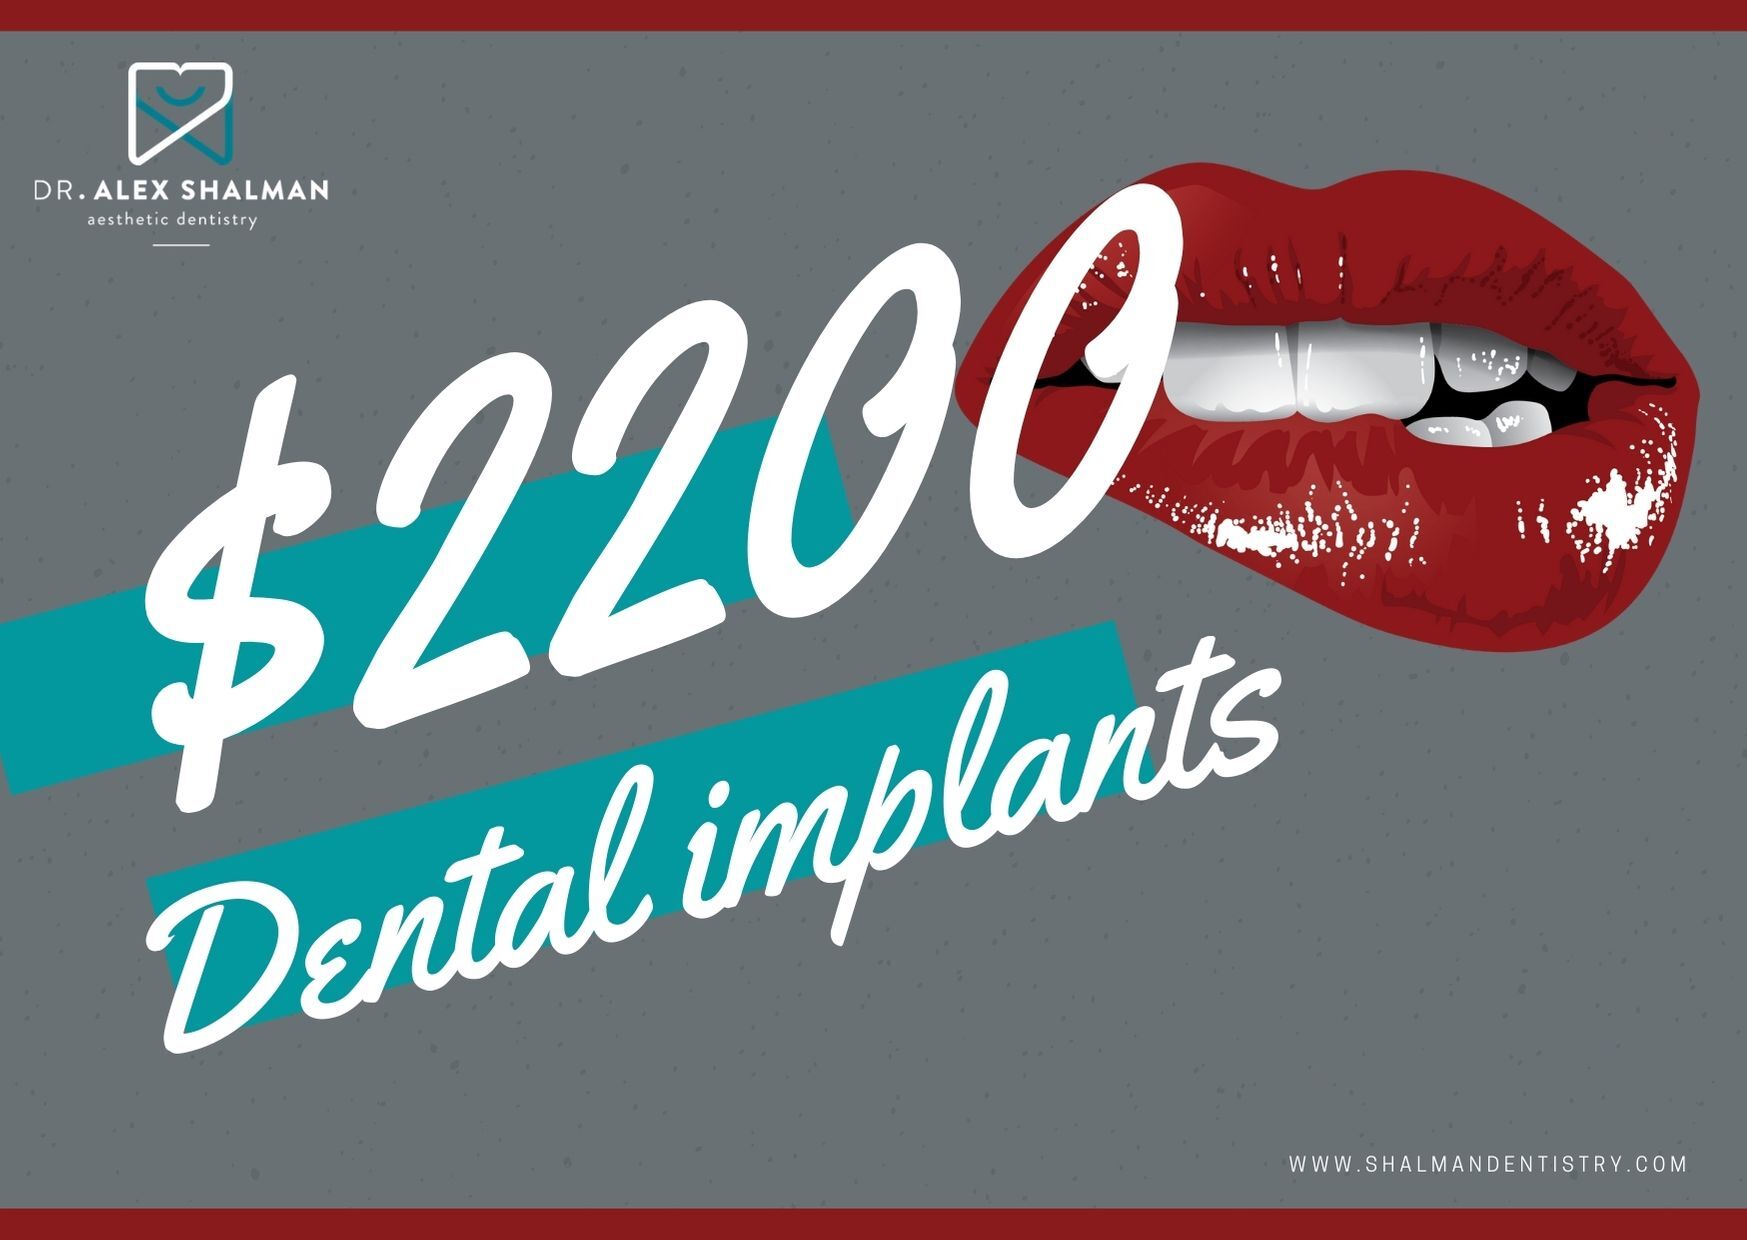 Shalman Dentistry provides dental implants., New York, United States